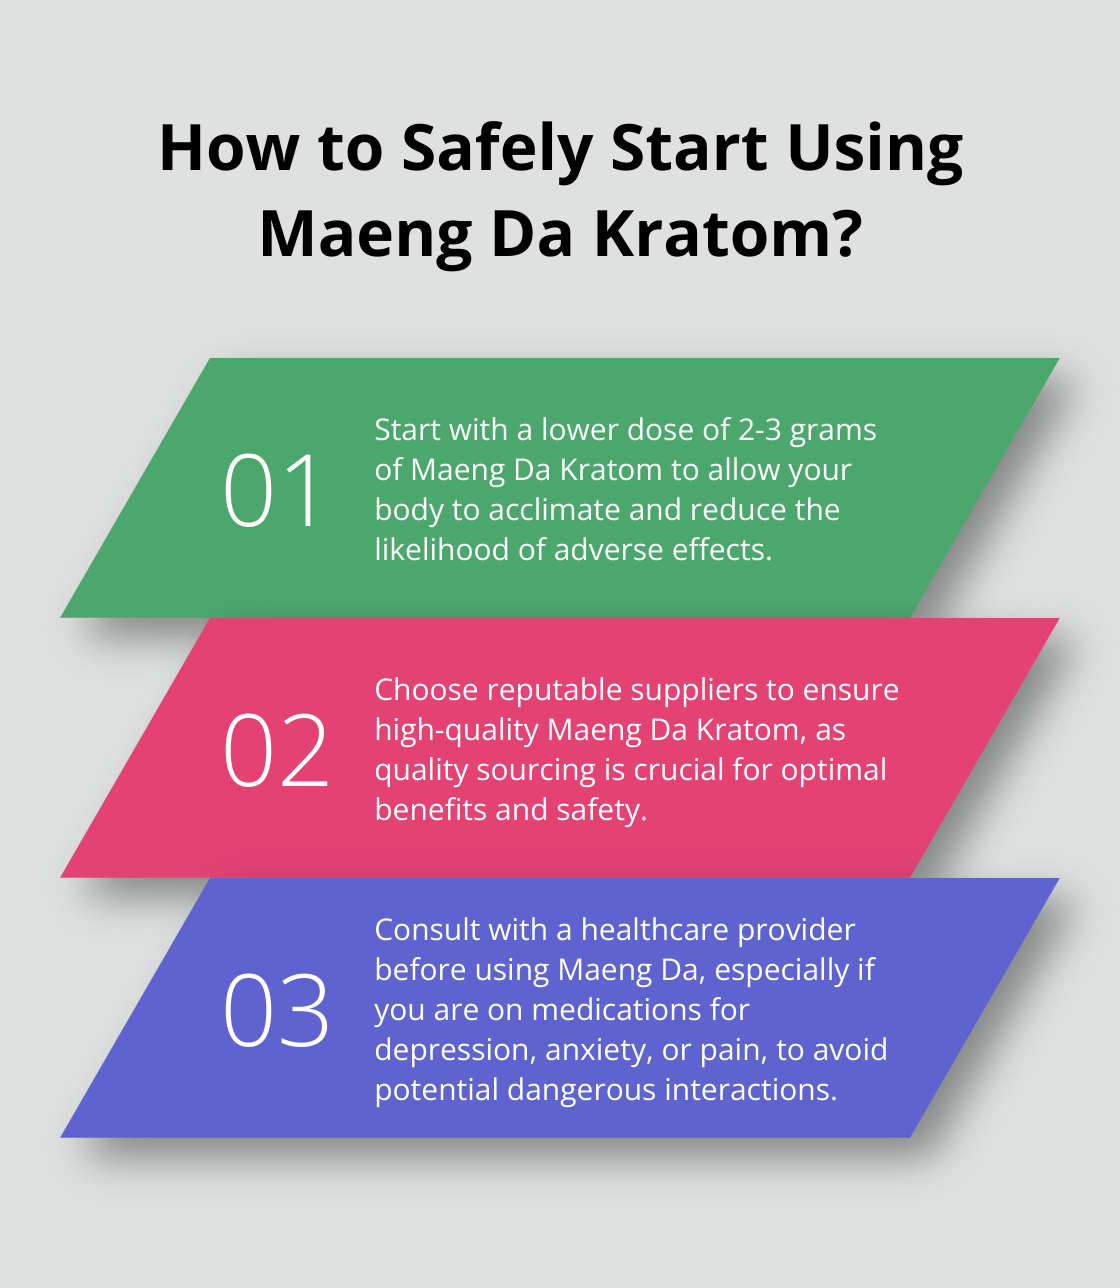 Fact - How to Safely Start Using Maeng Da Kratom?